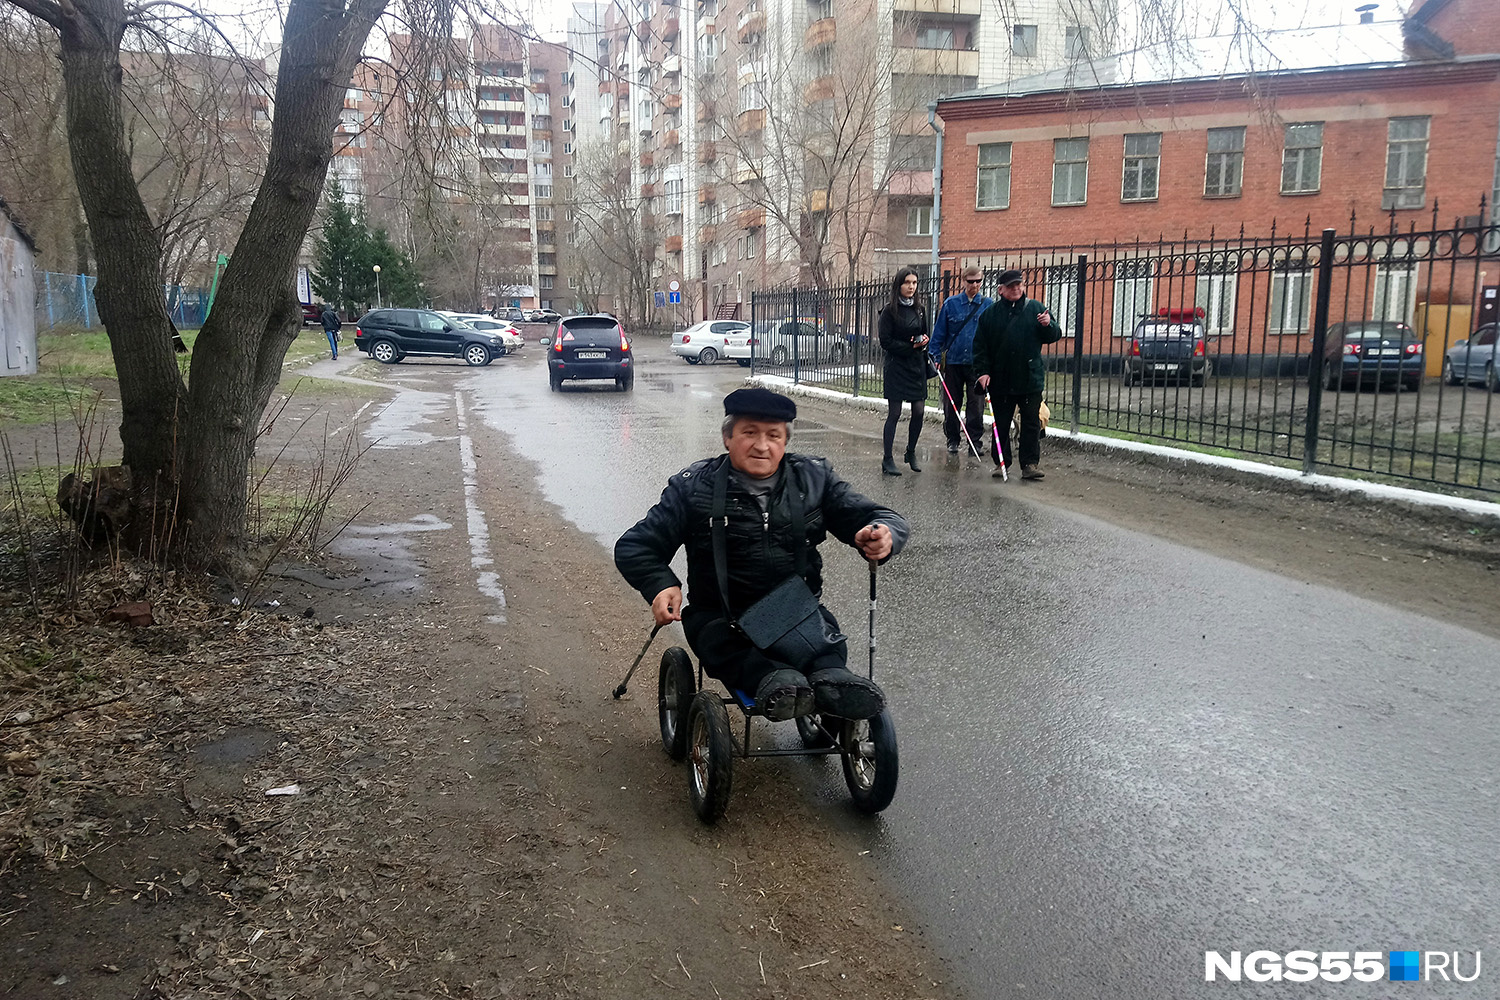 Сергею Гезикову приходится ехать по дороге, а не по тротуару